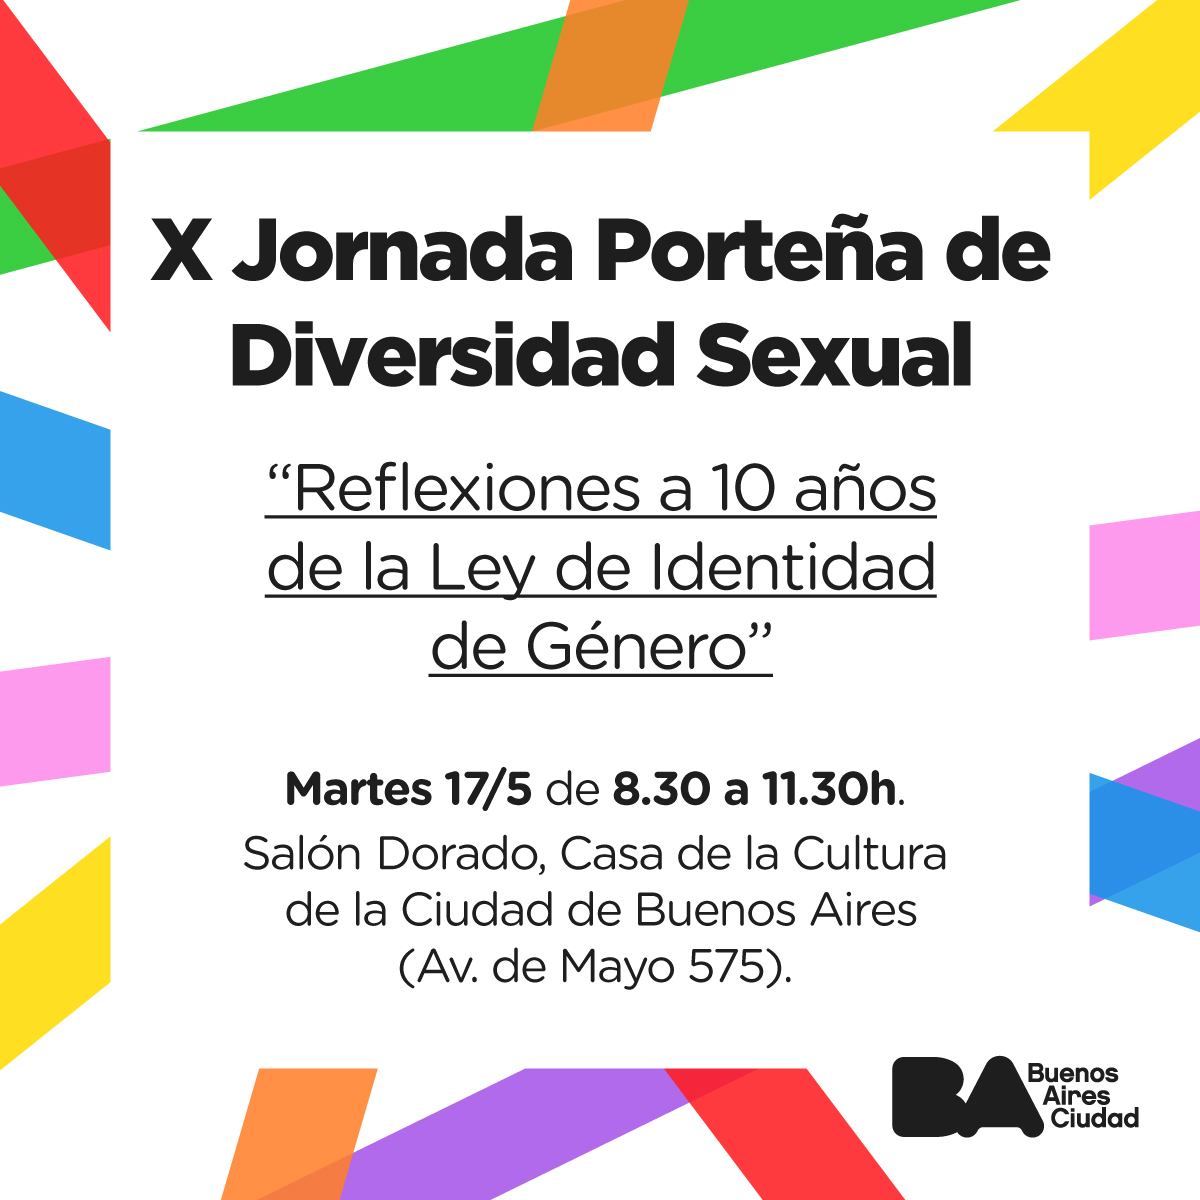 X Jornada Porteña de Diversidad Sexual a 10 años de la Ley de Identidad de Género 